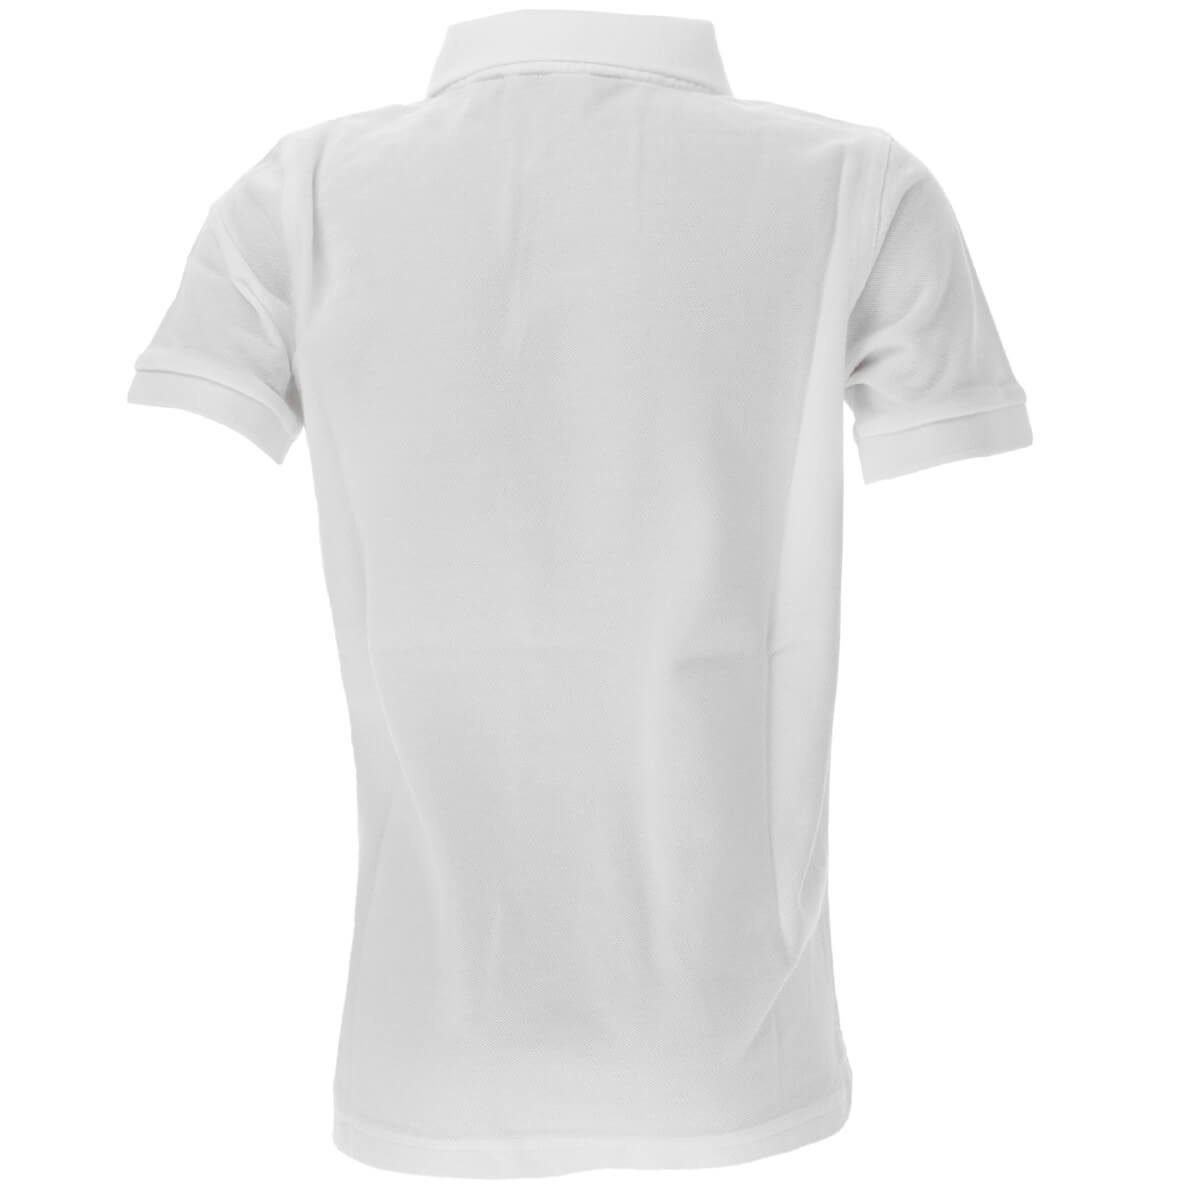 Unisex Original 902201 Poloshirt Pique Poloshirt Weiß(110) Baumwolle aus Kinder Gant